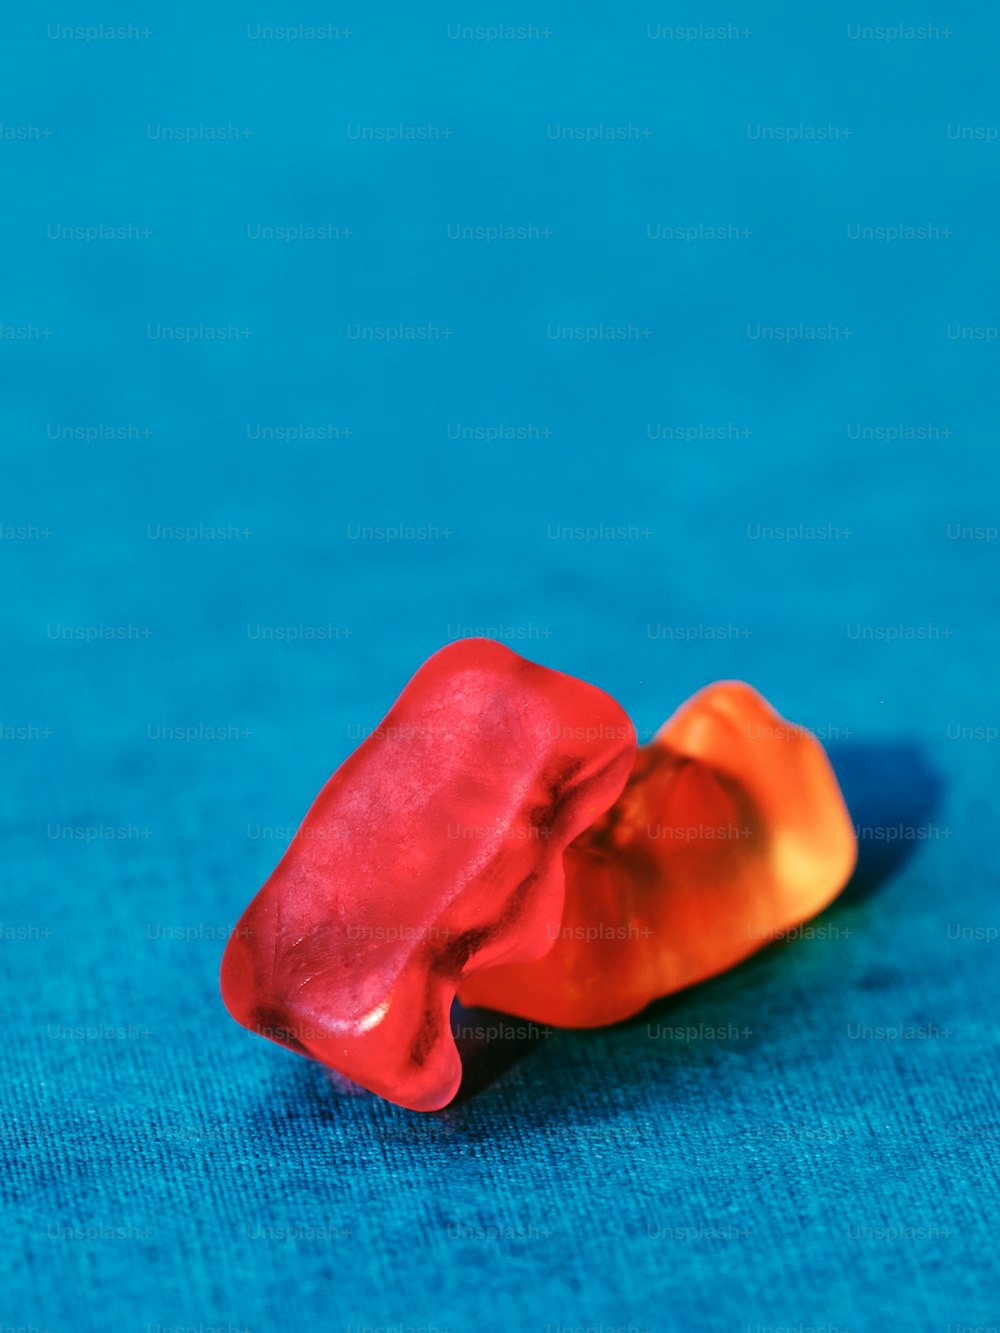 um objeto vermelho e laranja sentado em uma superfície azul